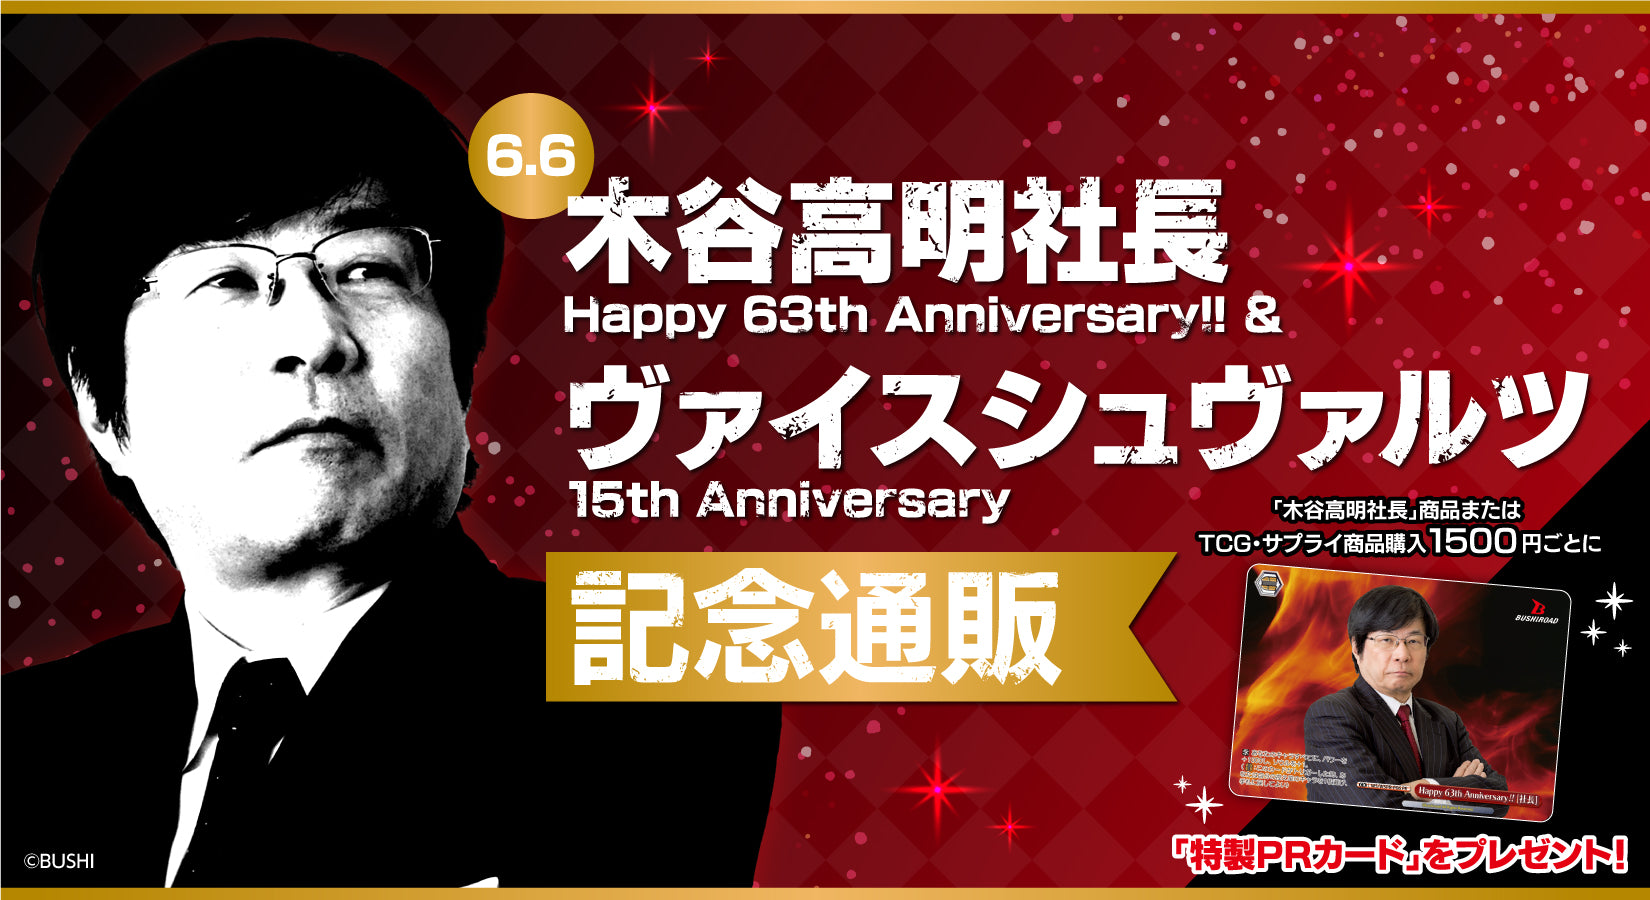 木谷高明社長 Happy 63th Anniversary!! ＆ヴァイスシュヴァルツ 15th